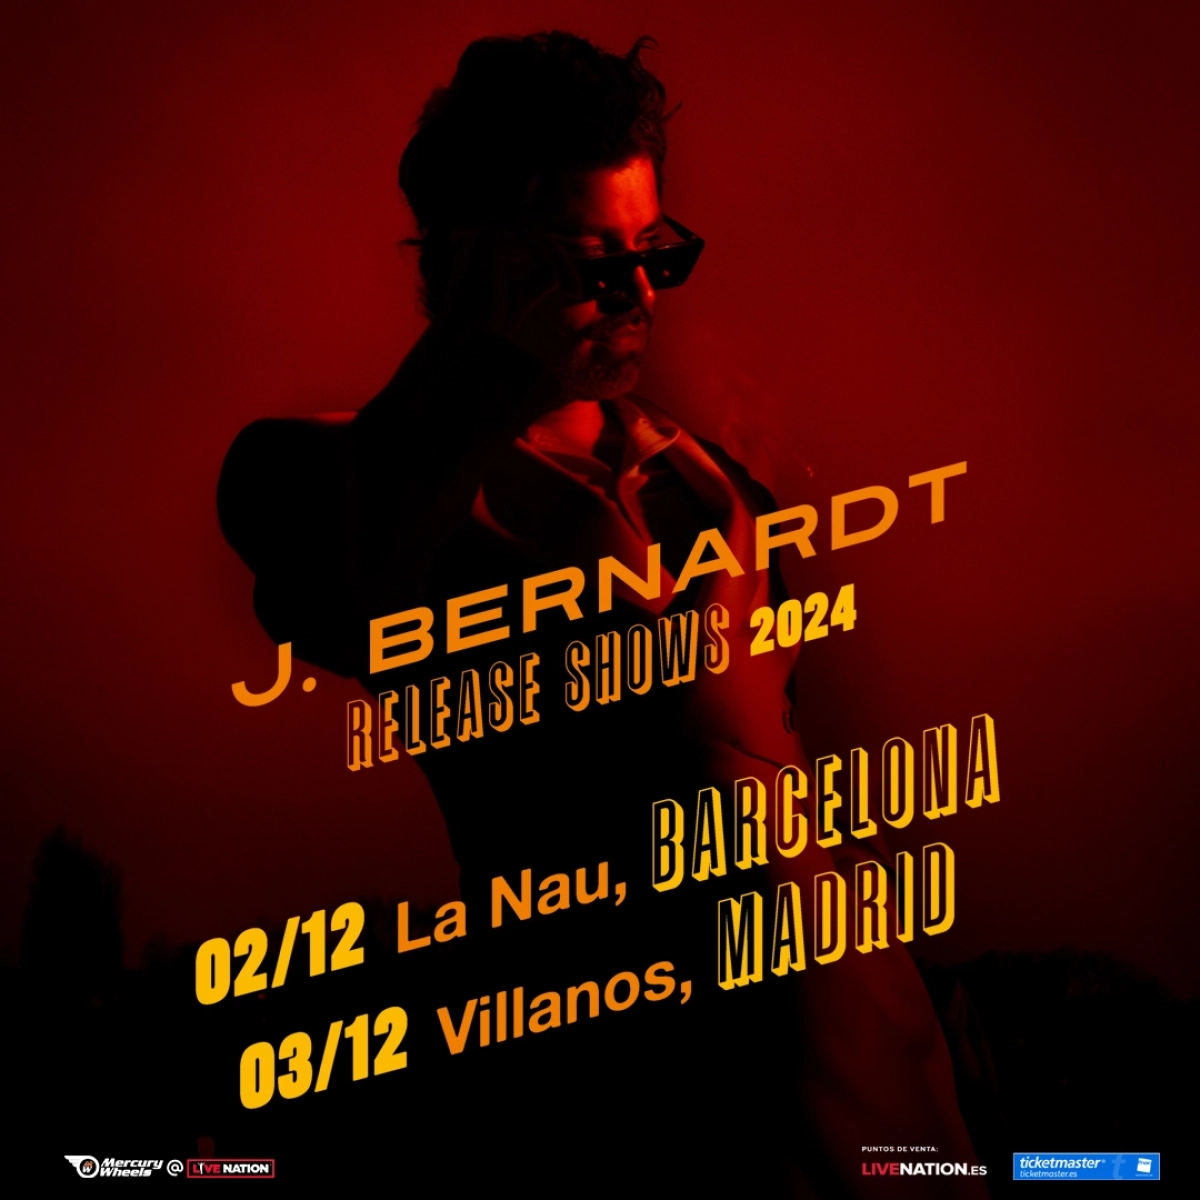 J. Bernardt en La Nau Tickets